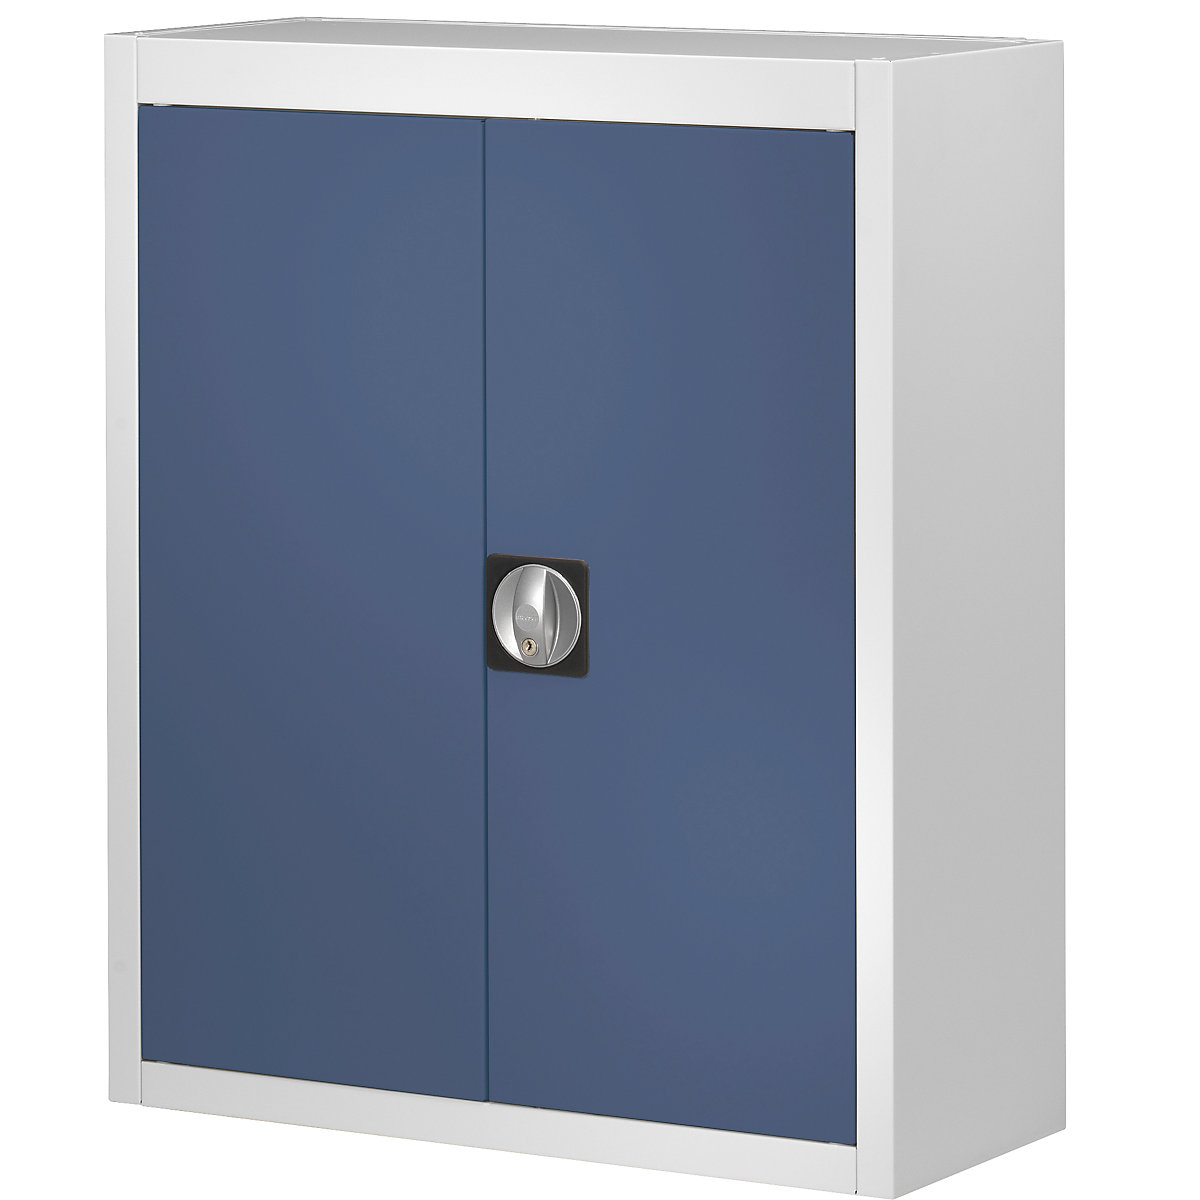 Skladová skříň, bez přepravek s viditelným obsahem – mauser, v x š x h 820 x 680 x 280 mm, dvoubarevná, korpus šedý, dveře modré, od 3 ks-6